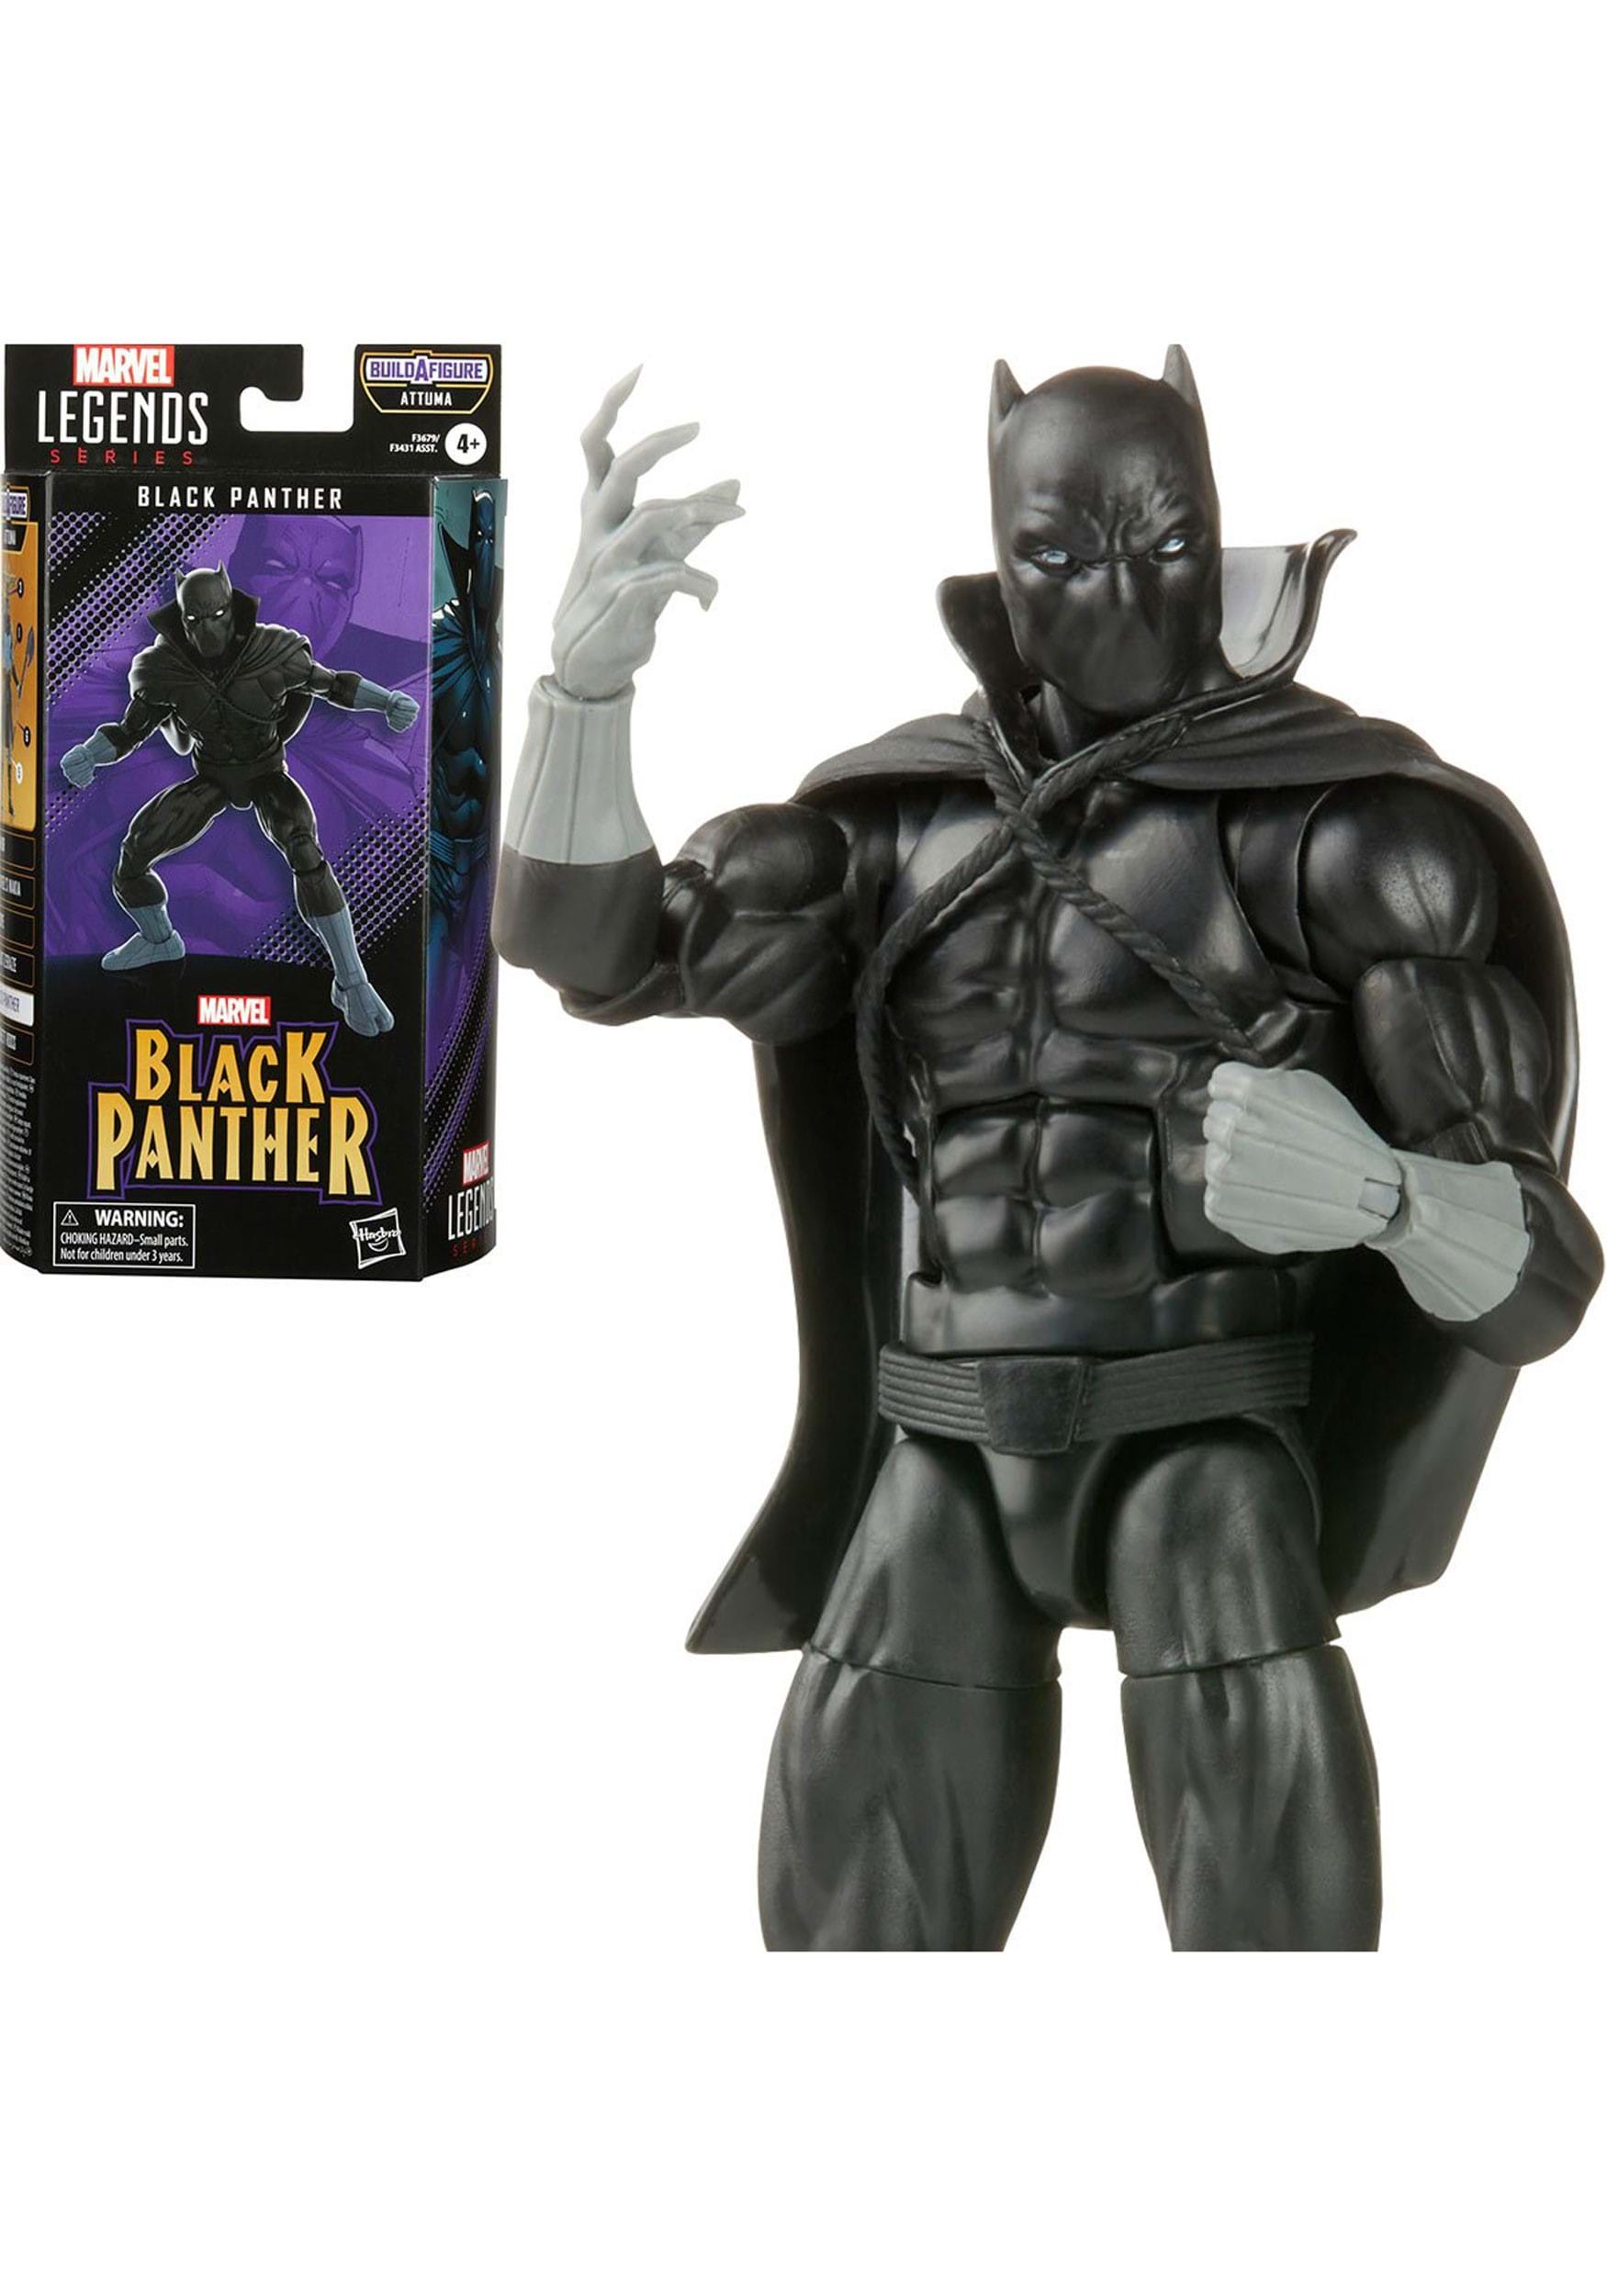 Black Panther Marvel Legends Action Figure